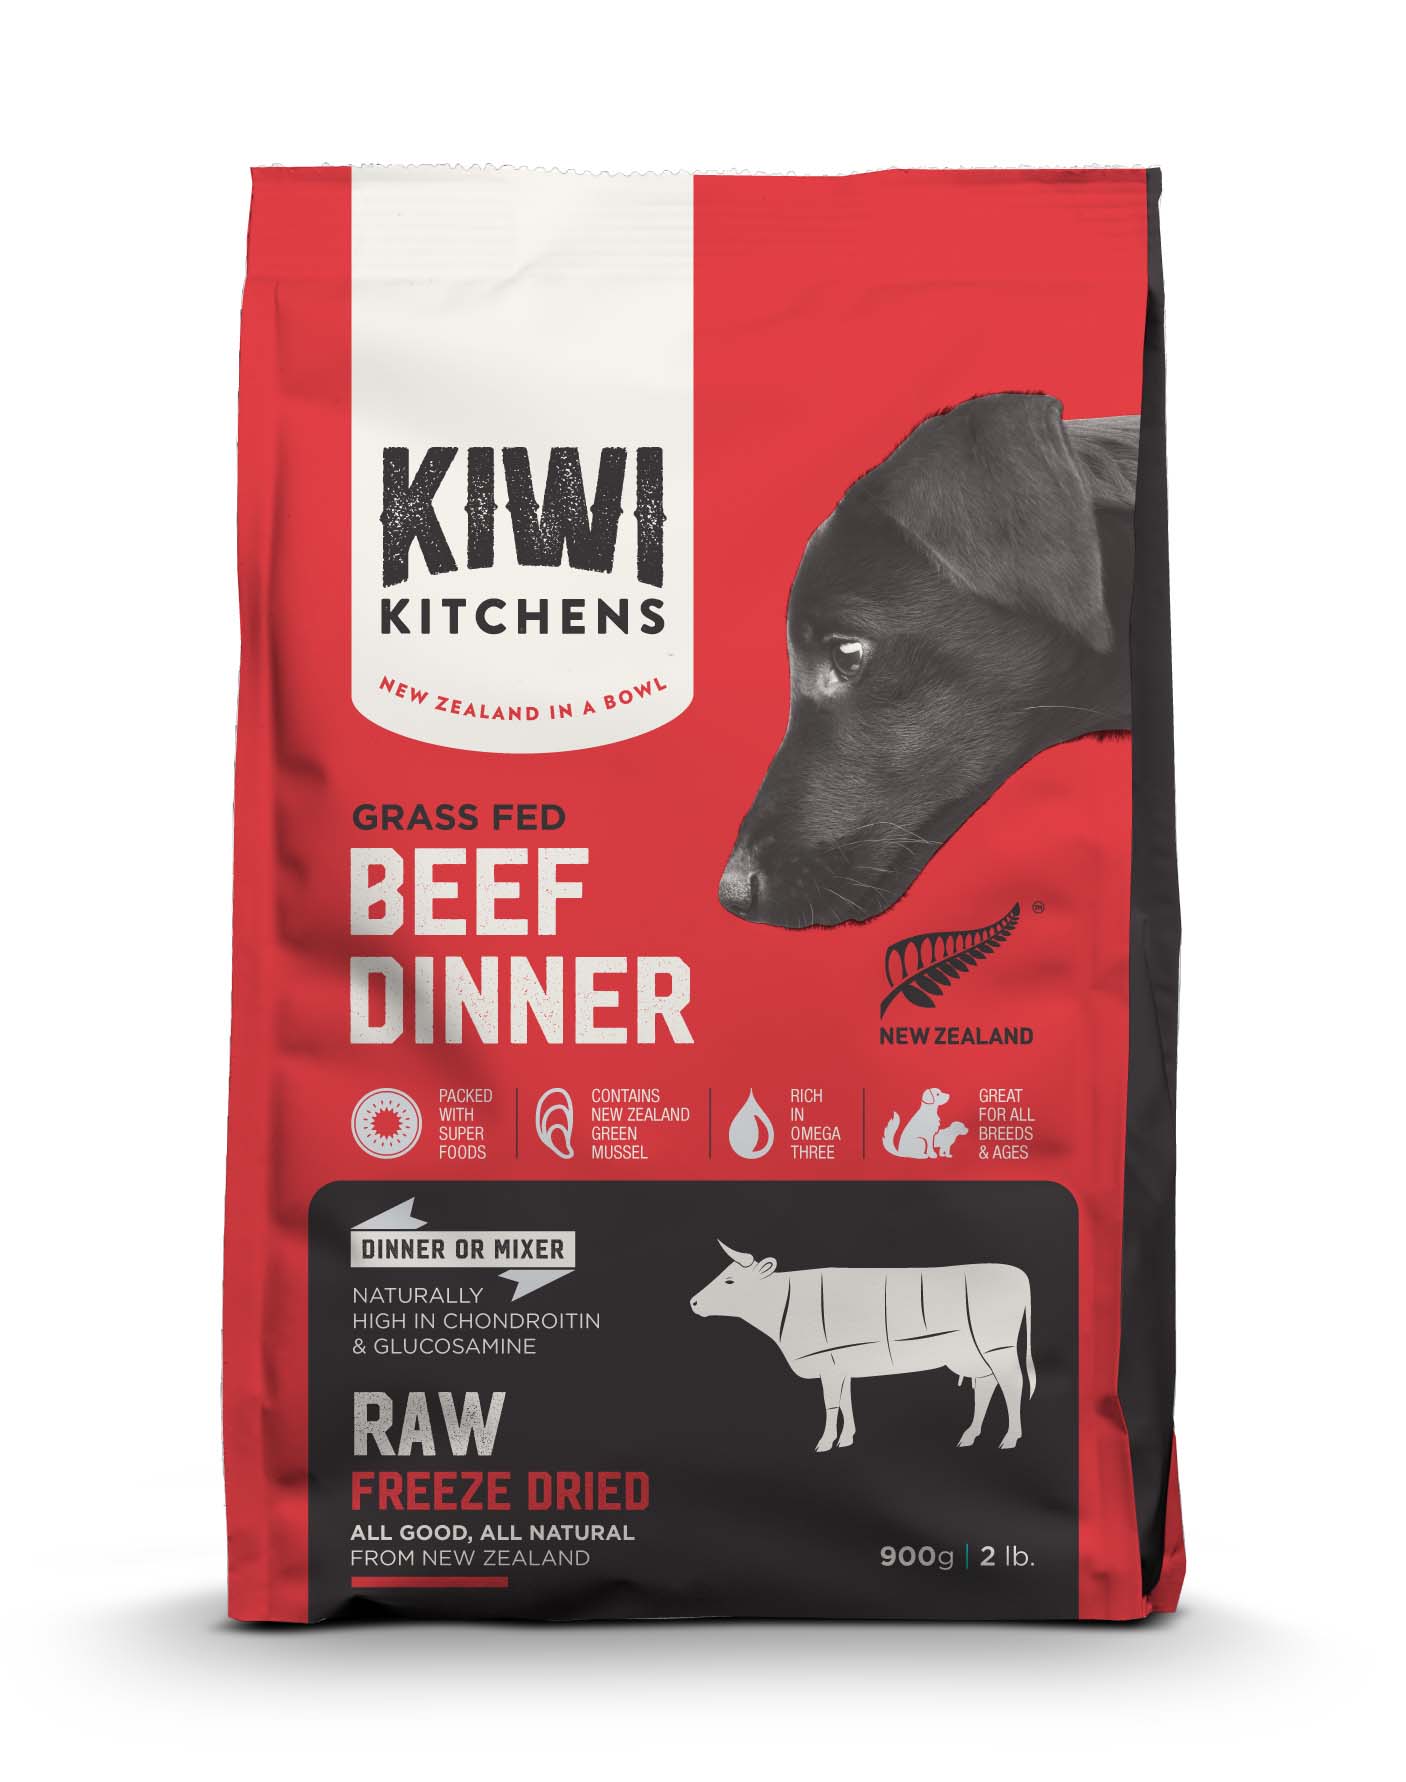 奇異廚房 鮮肉生食饗宴 原野牧牛佐鮭魚綠唇貝
Kiwi Kitchens: Beef Dinner